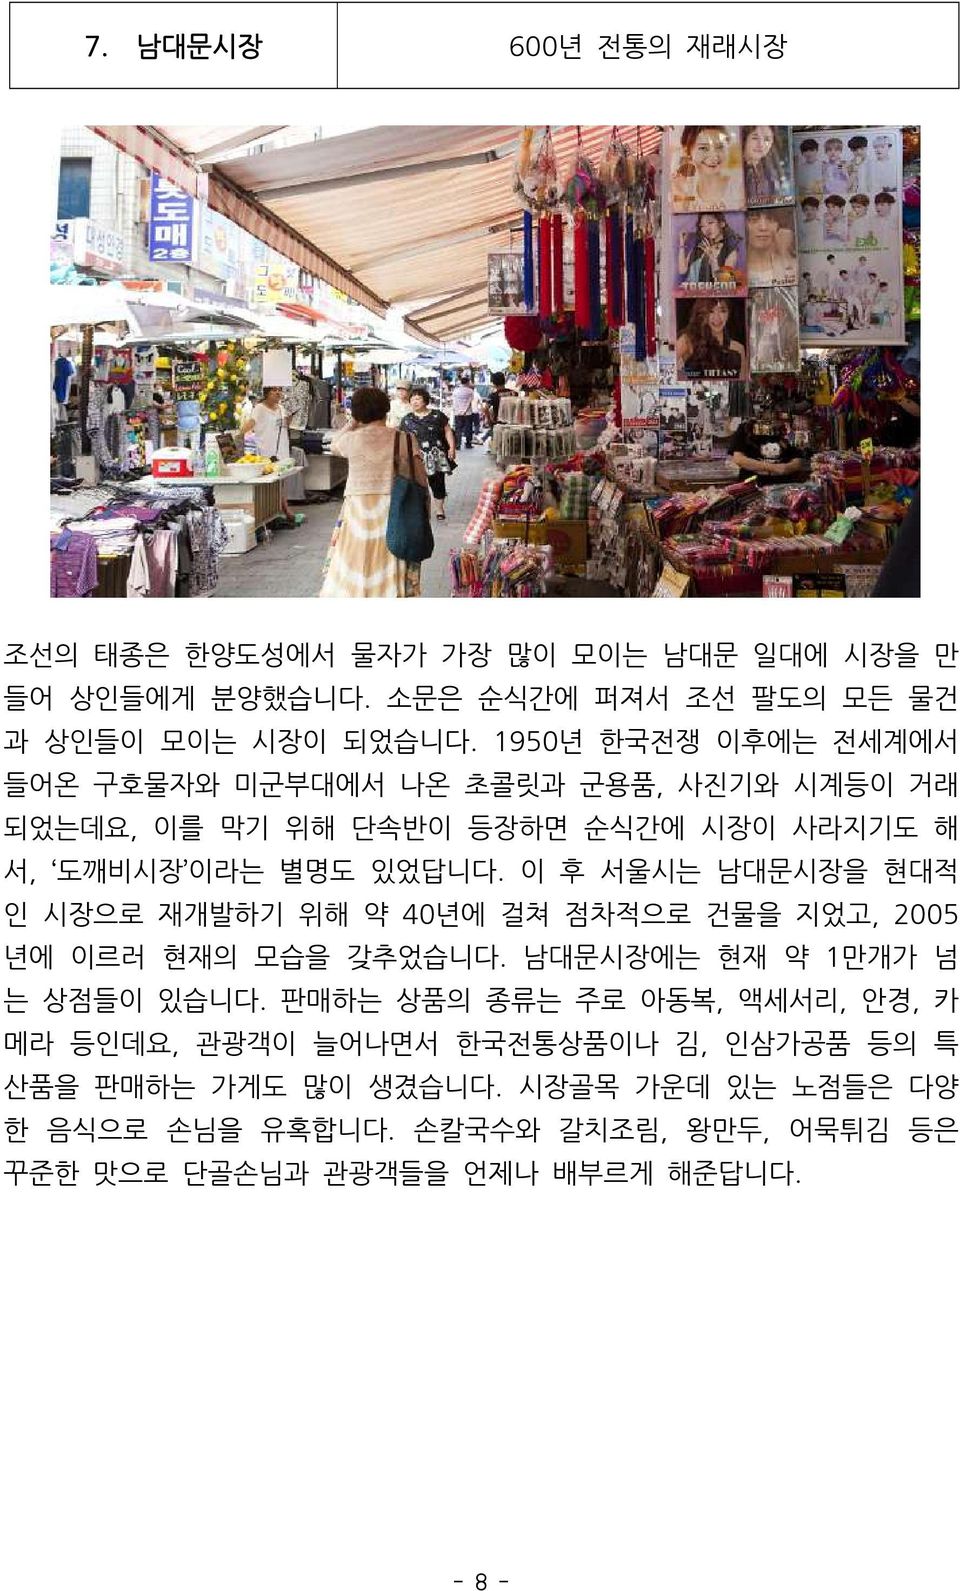 이 후 서울시는 남대문시장을 현대적 인 시장으로 재개발하기 위해 약 40년에 걸쳐 점차적으로 건물을 지었고, 2005 년에 이르러 현재의 모습을 갖추었습니다. 남대문시장에는 현재 약 1만개가 넘 는 상점들이 있습니다.